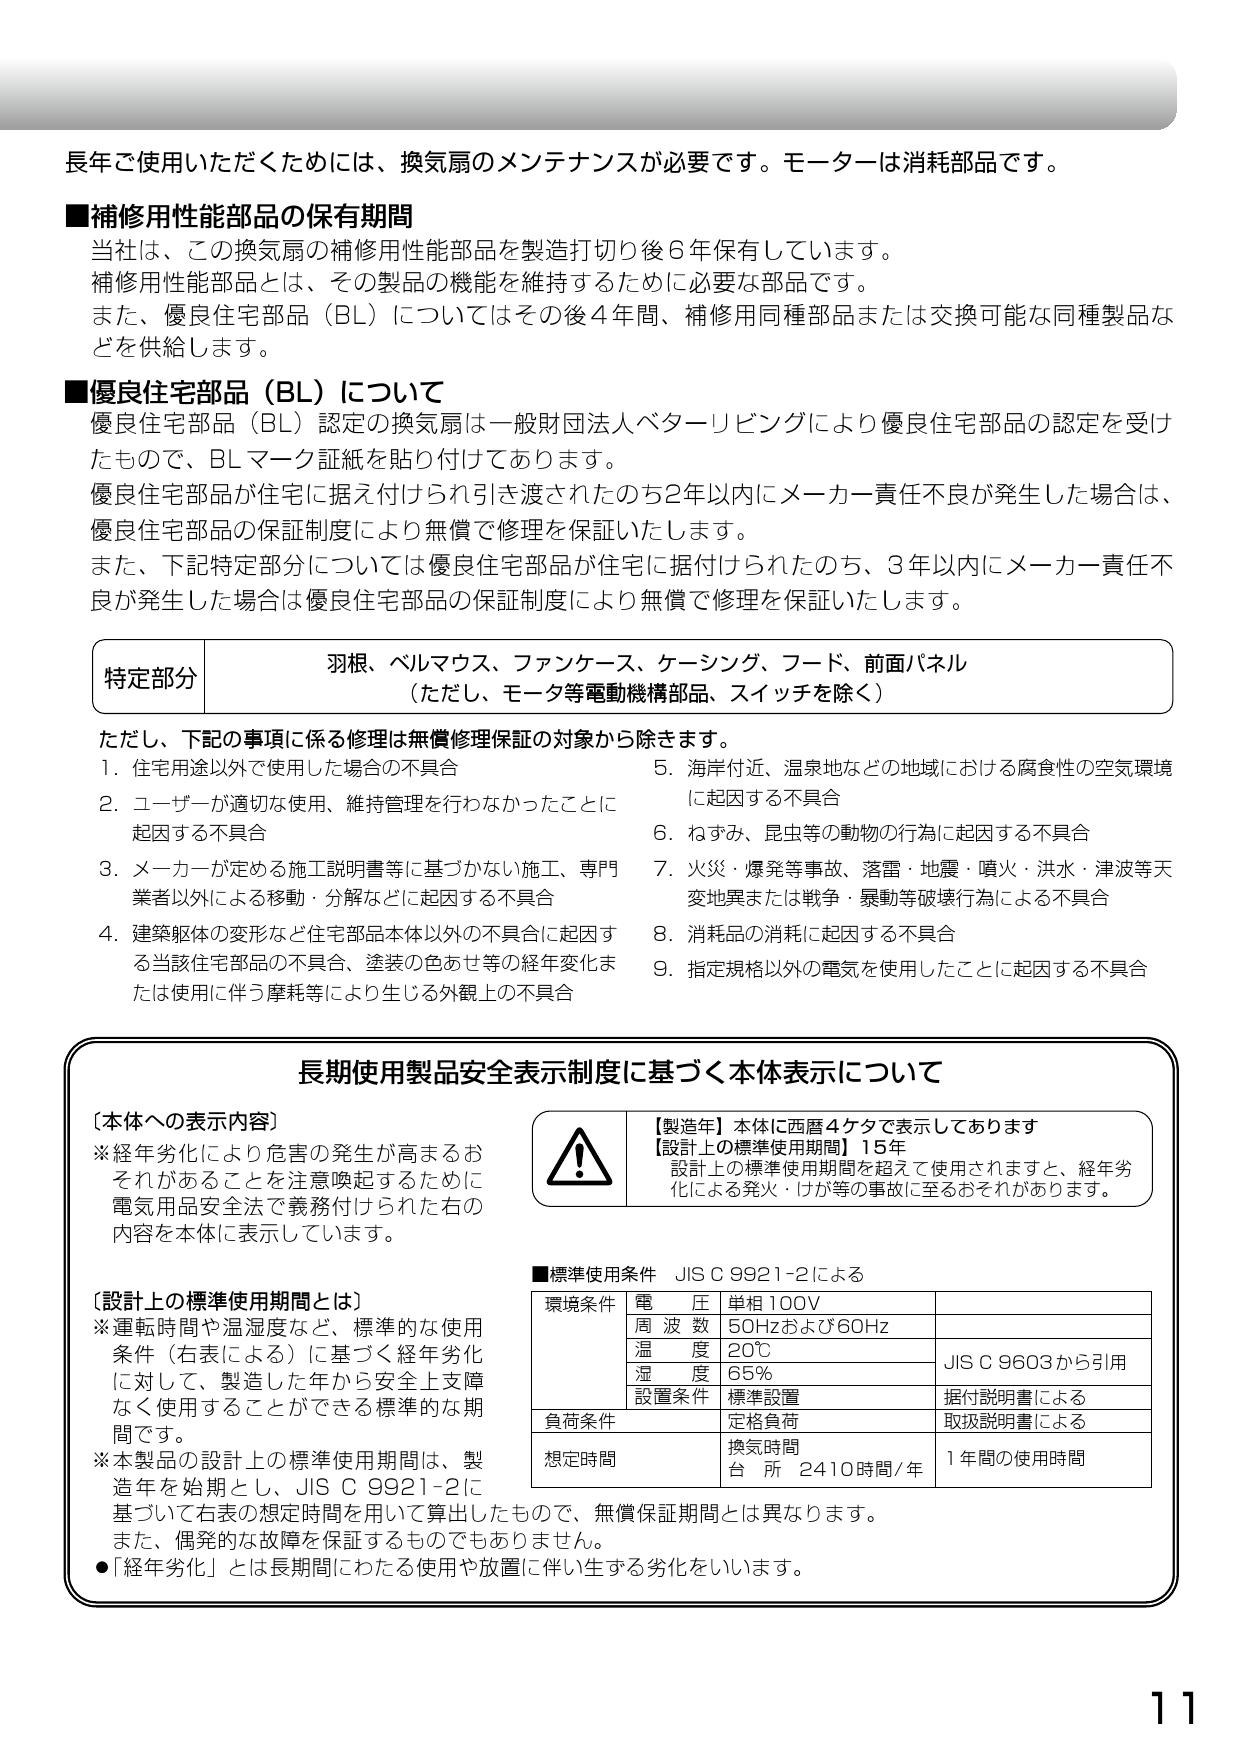 三菱電機 (MITSUBISHI) レンジフードファン ブース形 (深形)・BL認定品 V-6047KL7-BL - 2